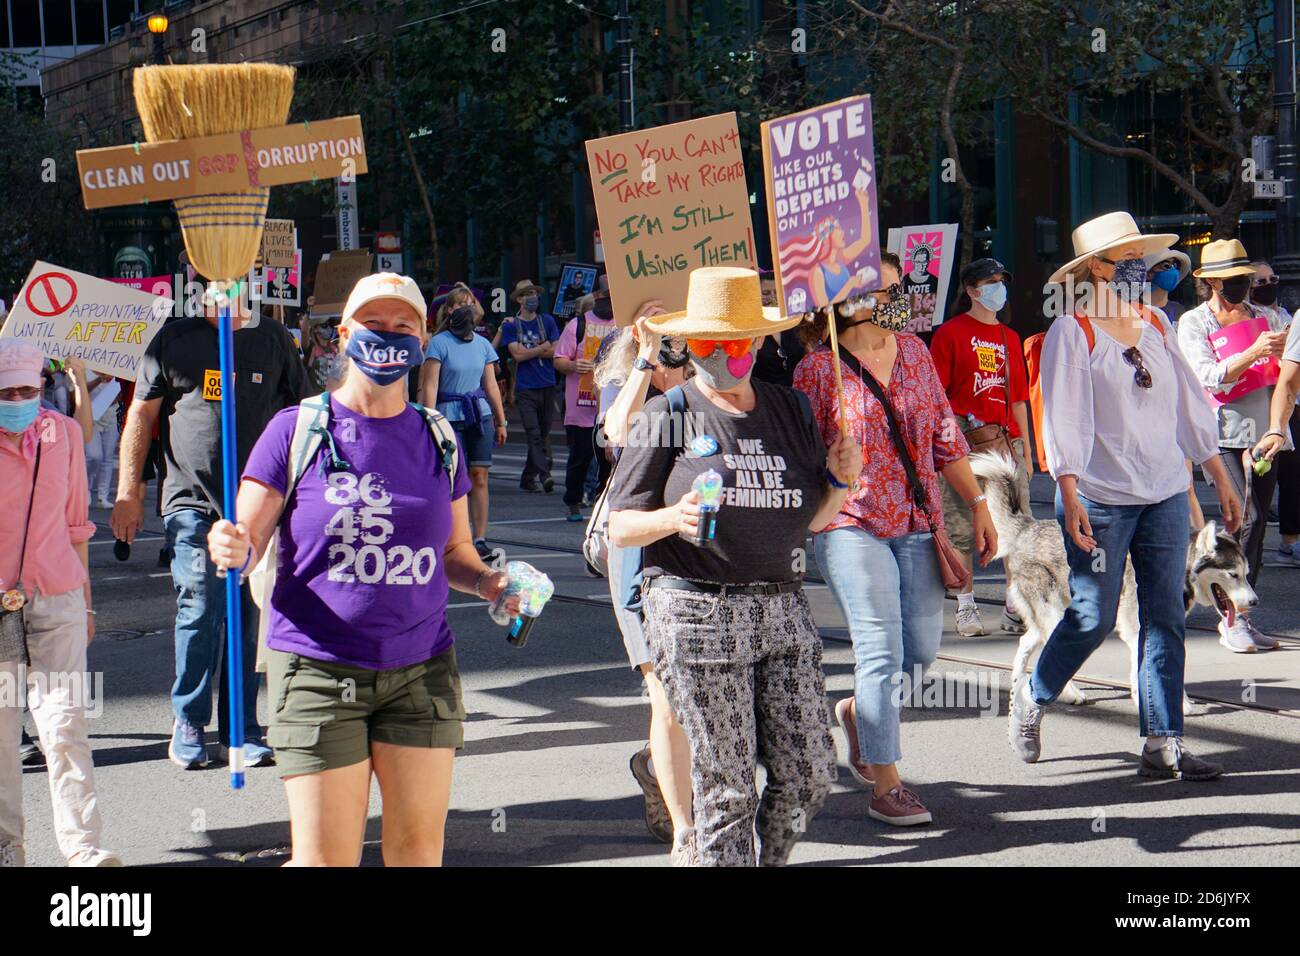 17 octobre 2020. La marche des femmes de San Francisco avant l'élection présidentielle américaine. Les manifestants portent des panneaux de vote, anti-Trump et droits des femmes. Banque D'Images